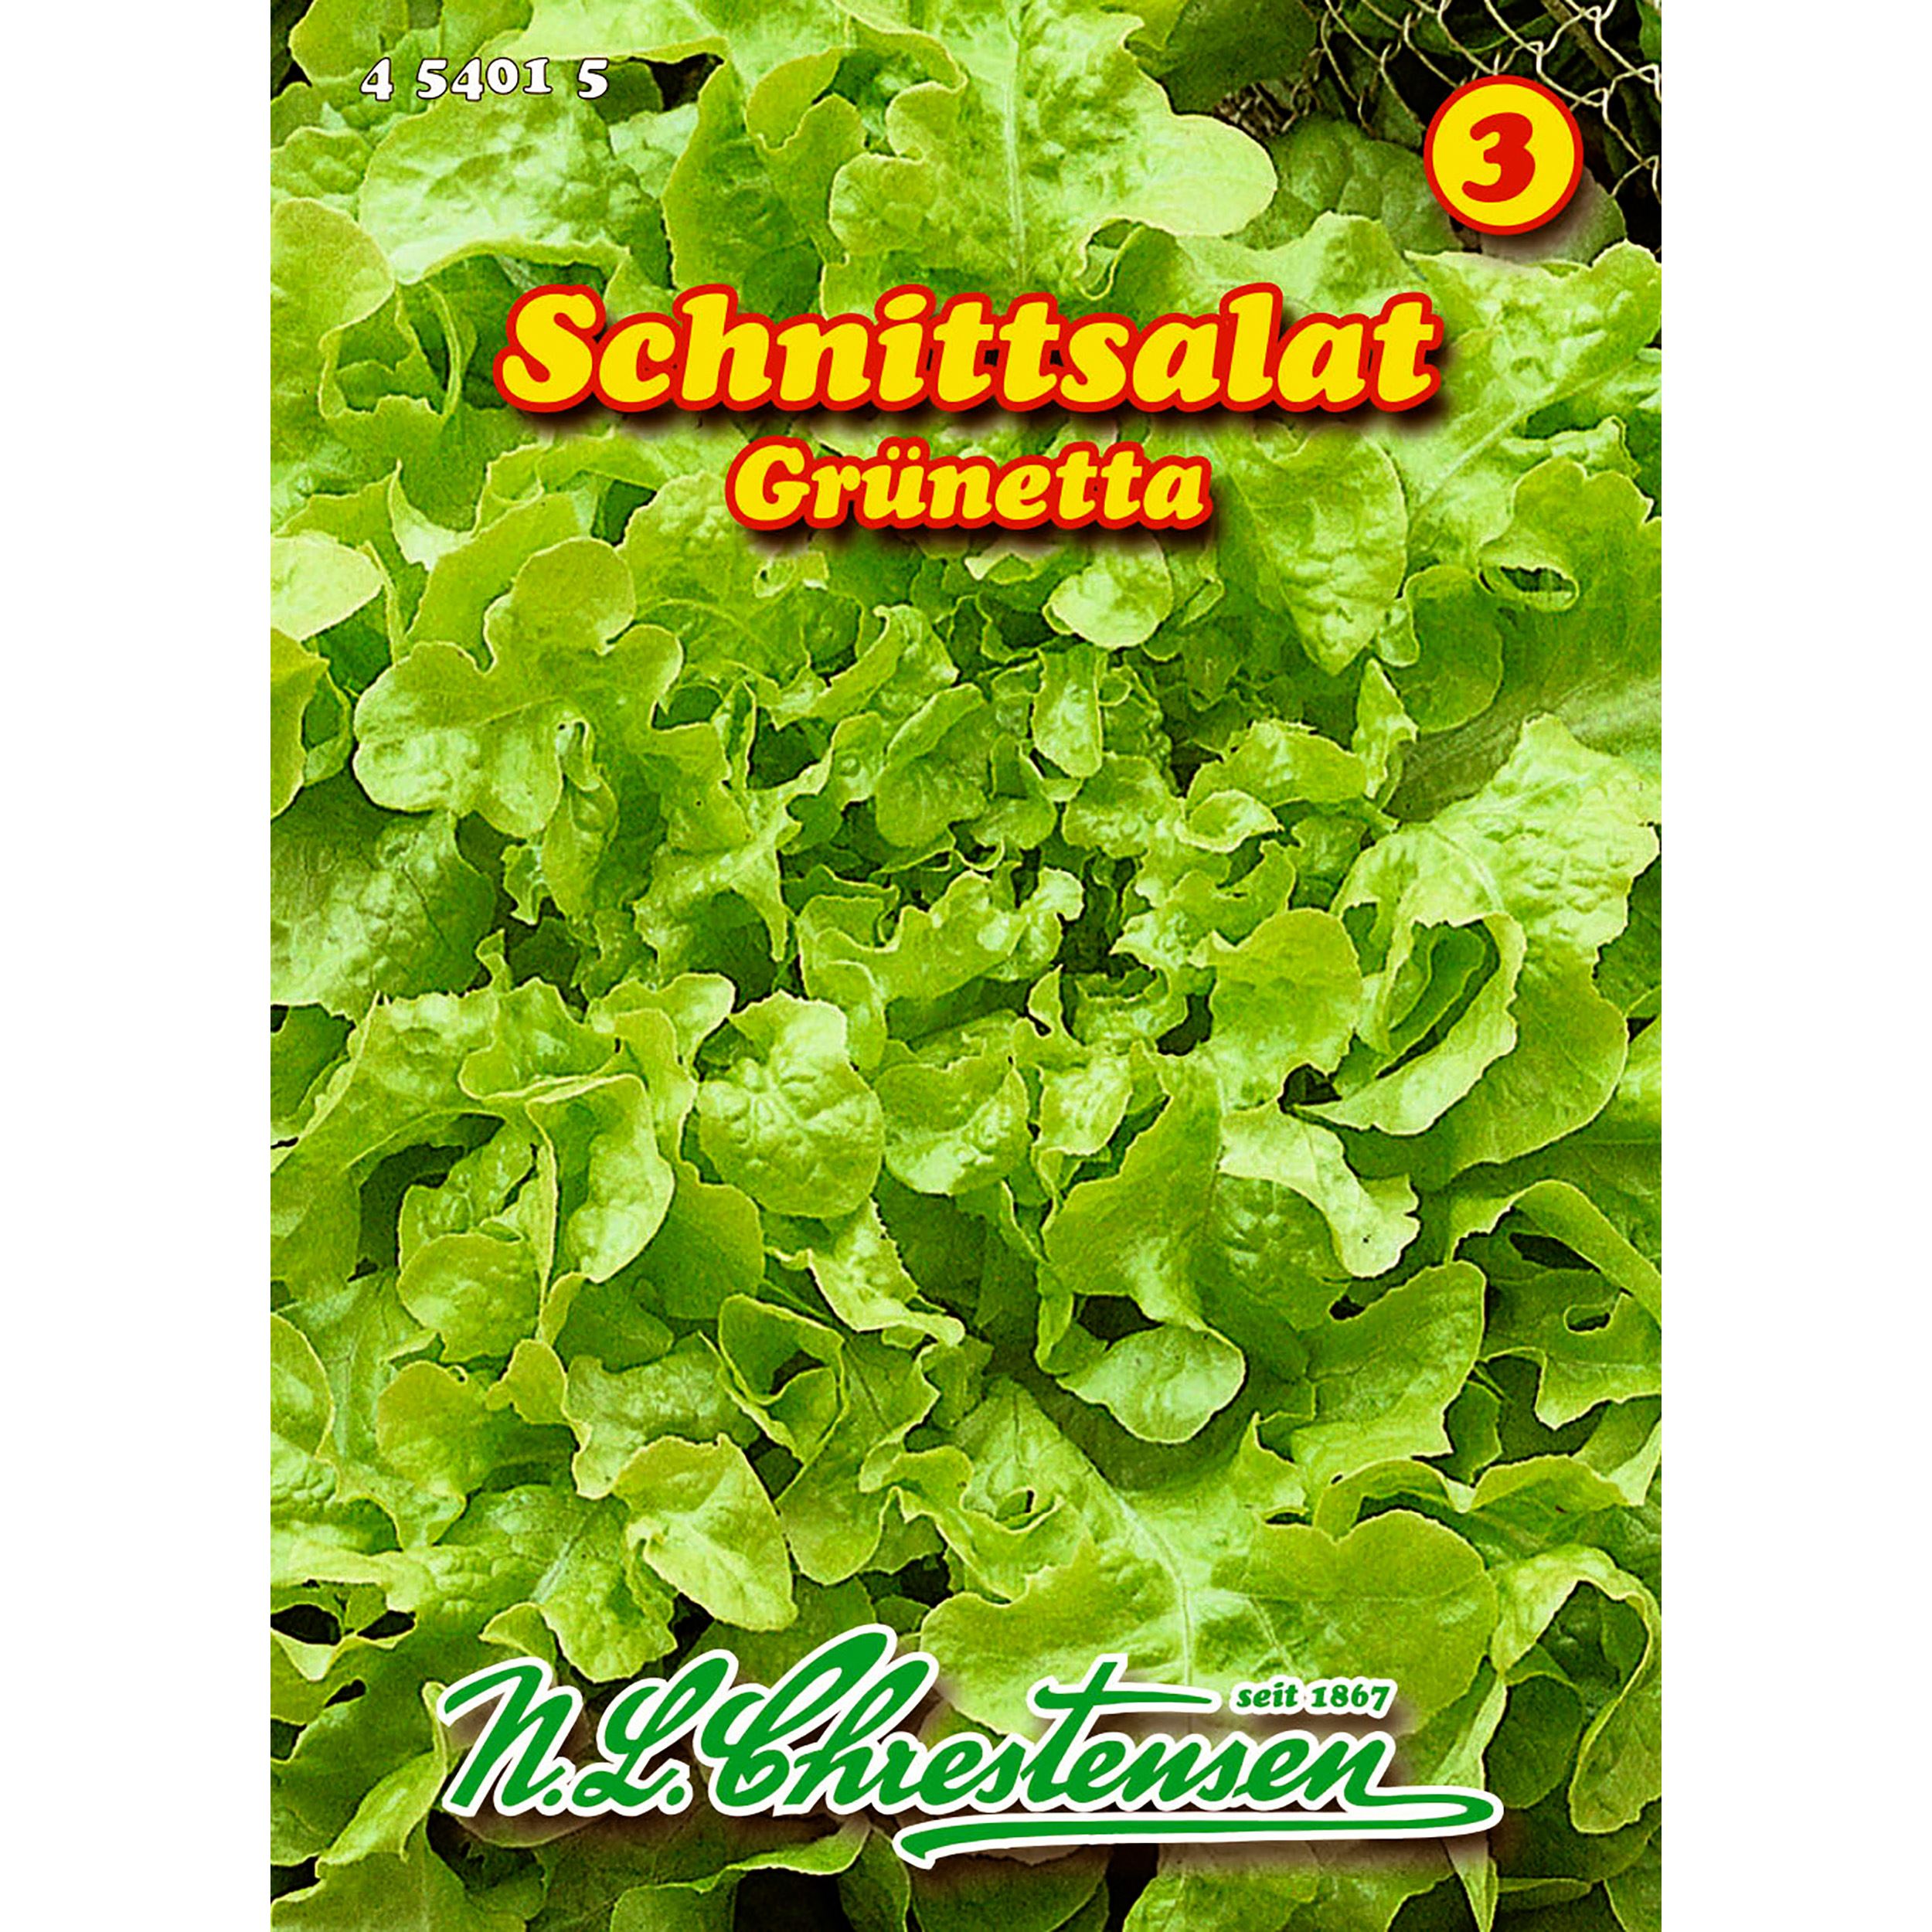 Schnittsalat, Grünetta für 8-10 lfd. Meter